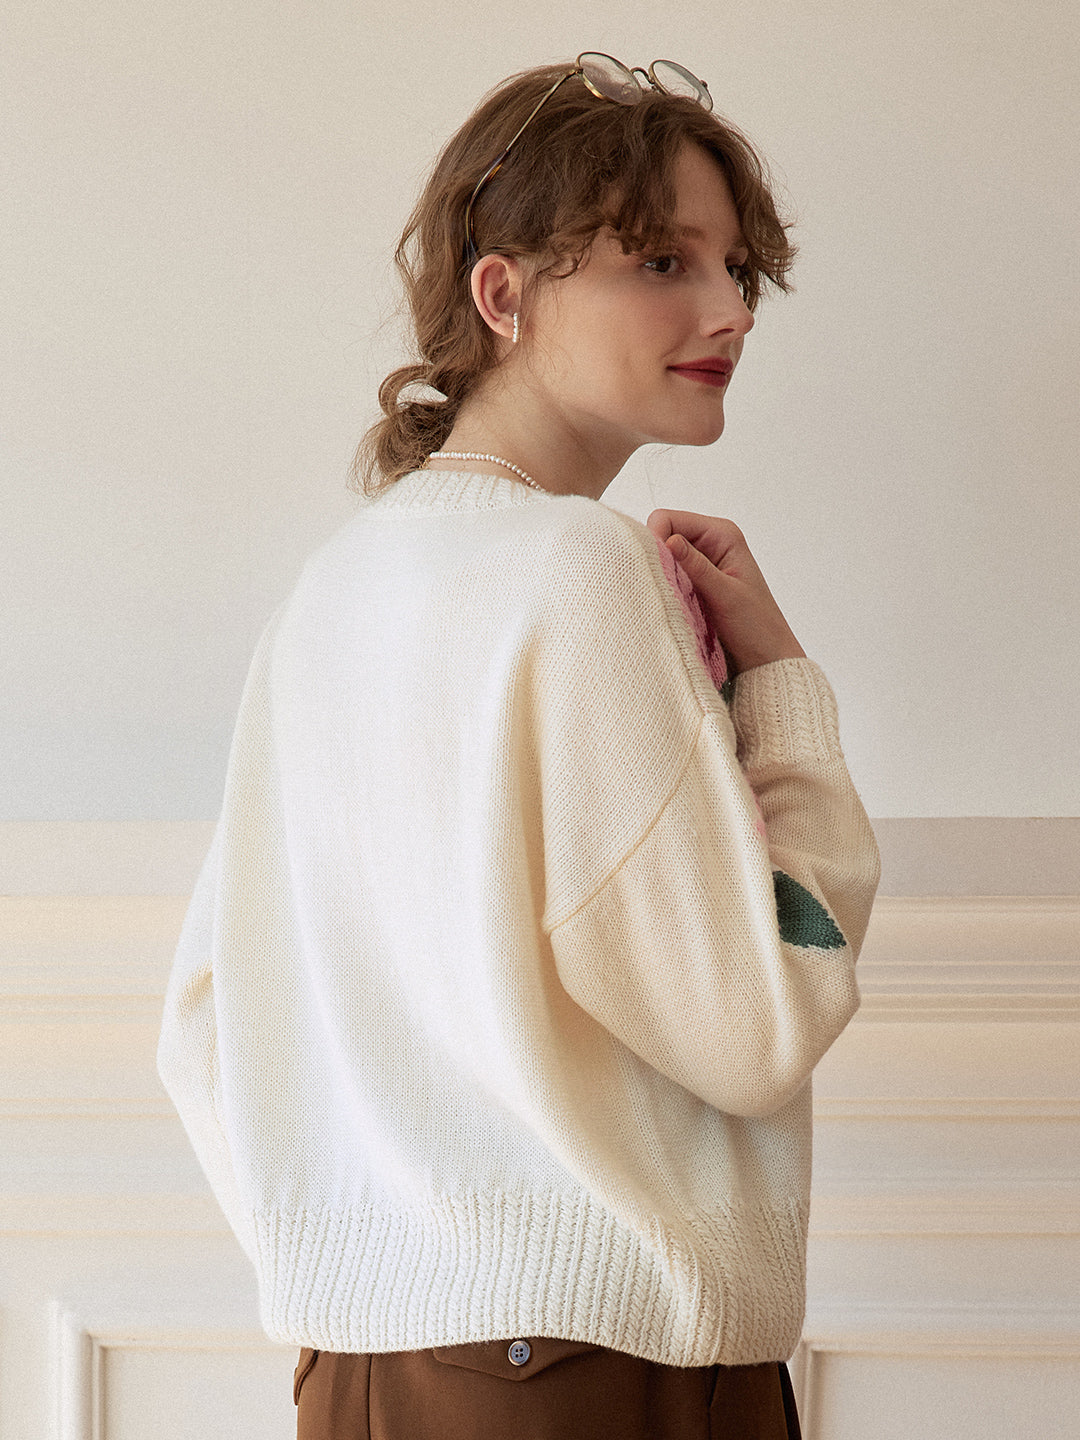 Noemi Rose Jacquard White Knit Sweater